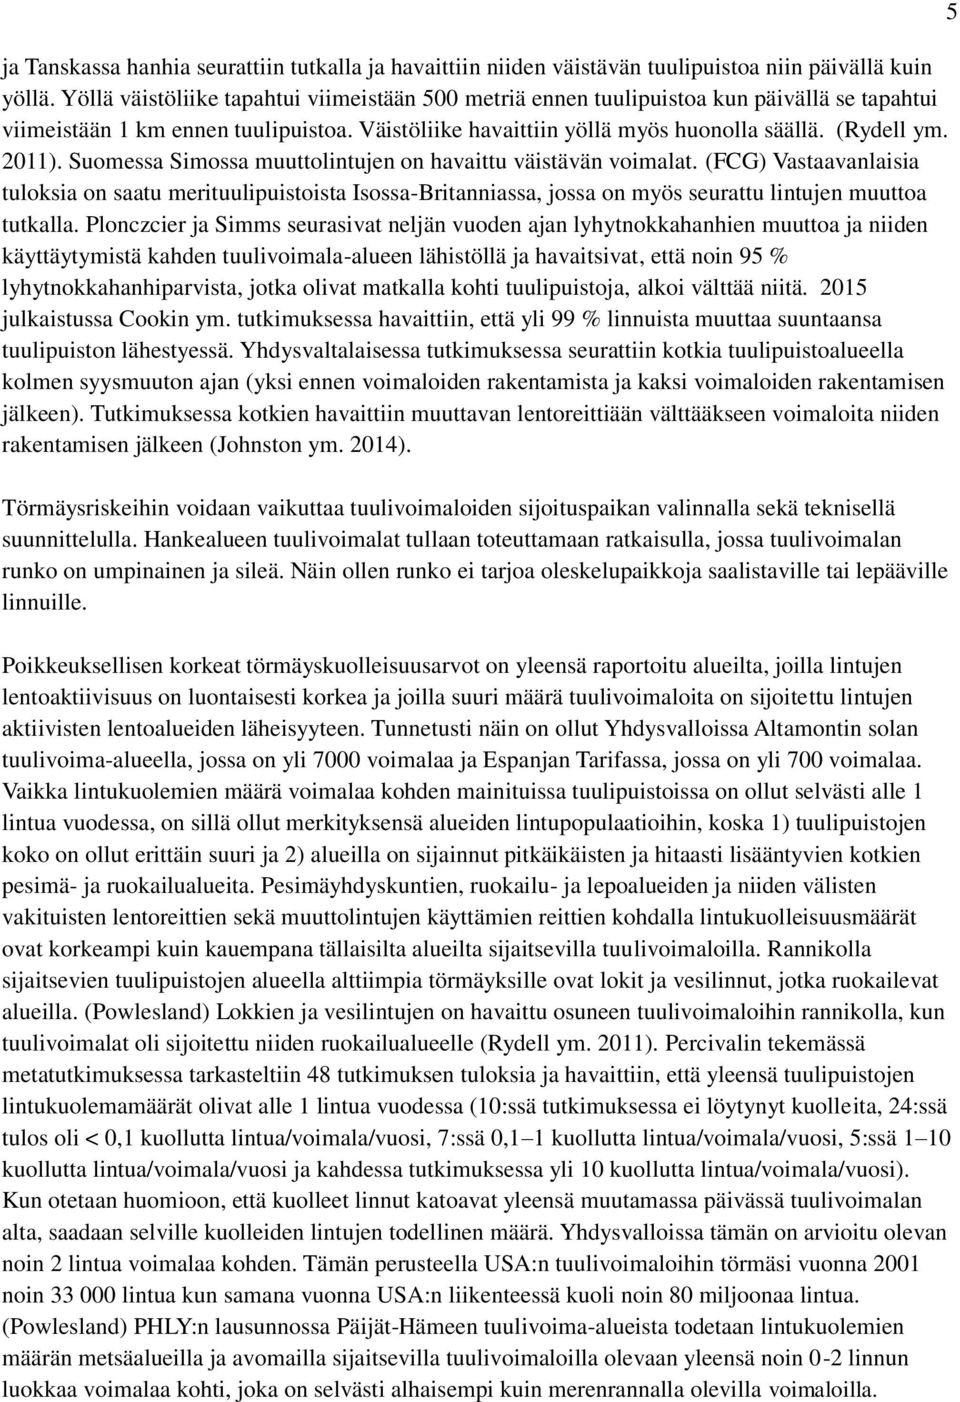 Suomessa Simossa muuttolintujen on havaittu väistävän voimalat. (FCG) Vastaavanlaisia tuloksia on saatu merituulipuistoista Isossa-Britanniassa, jossa on myös seurattu lintujen muuttoa tutkalla.